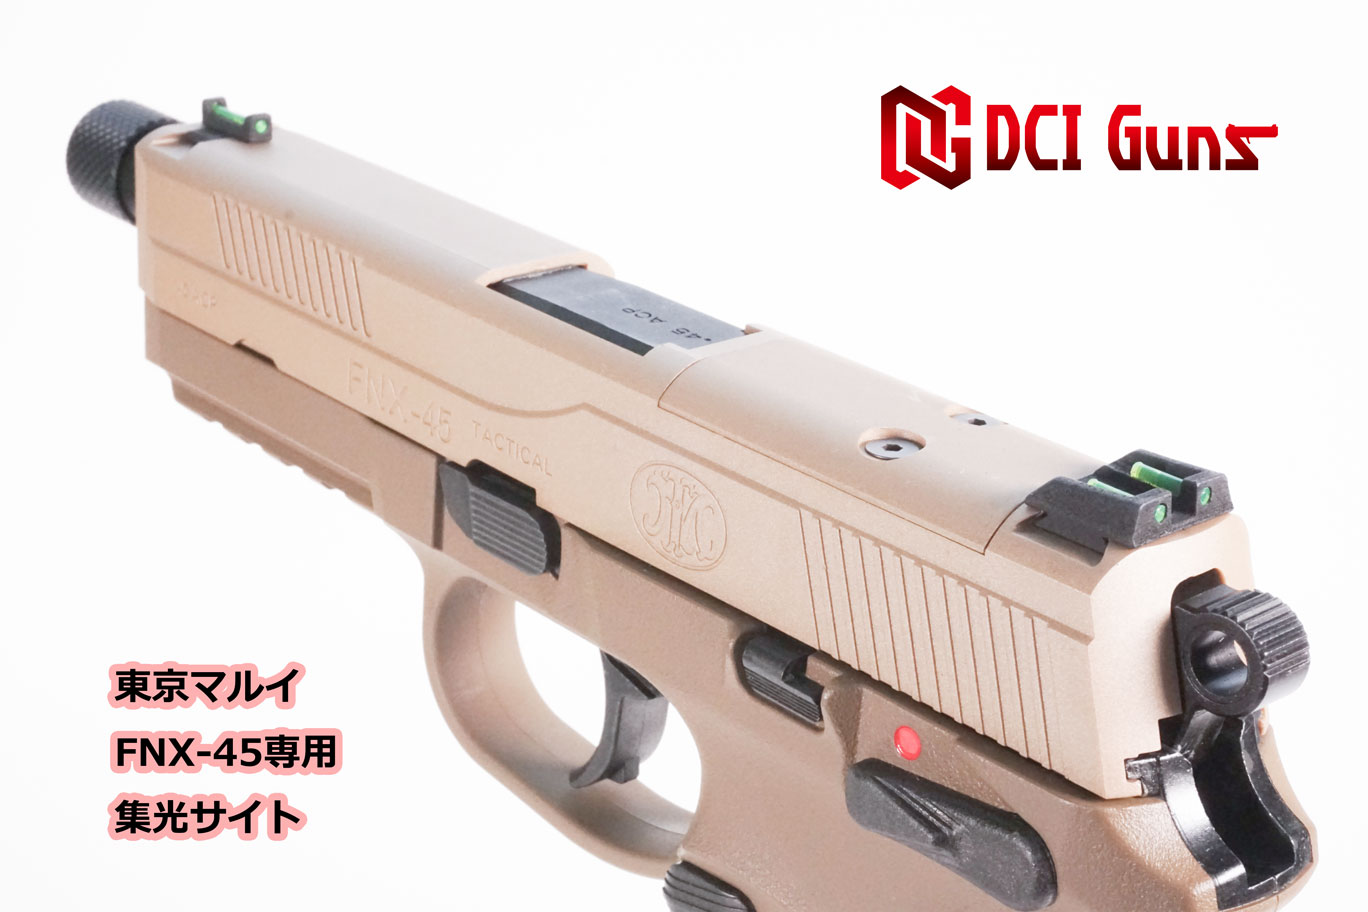 集光サイト iM 東京マルイ FNX-45用 | DCI Guns 公式直販ストア